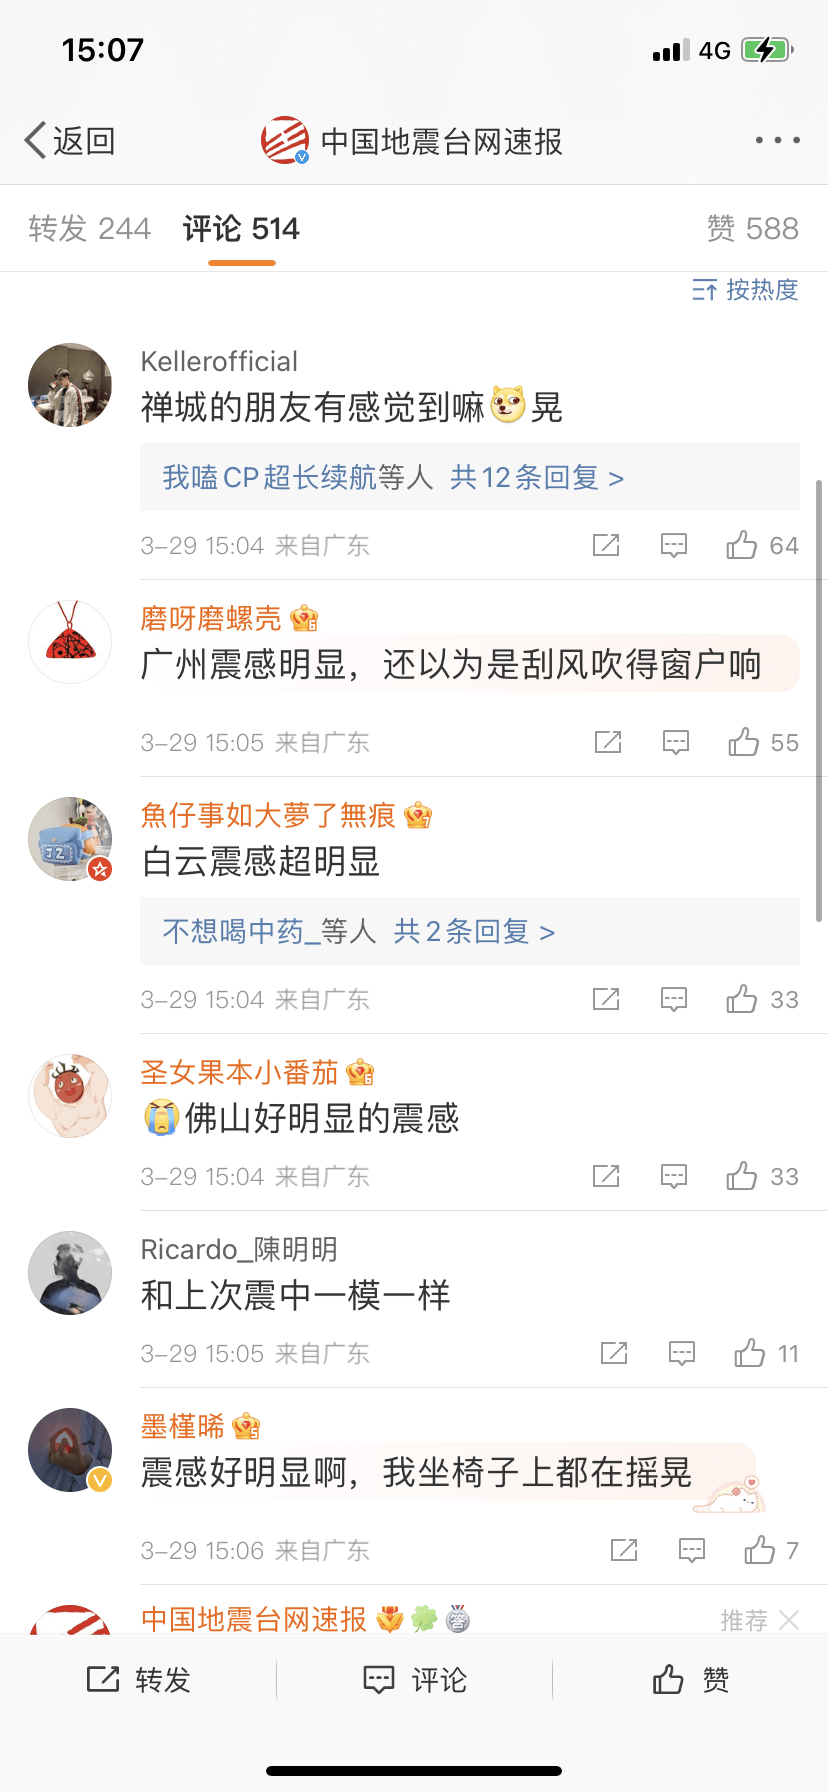 有广州网民表示地震时震感明显。(互联网)